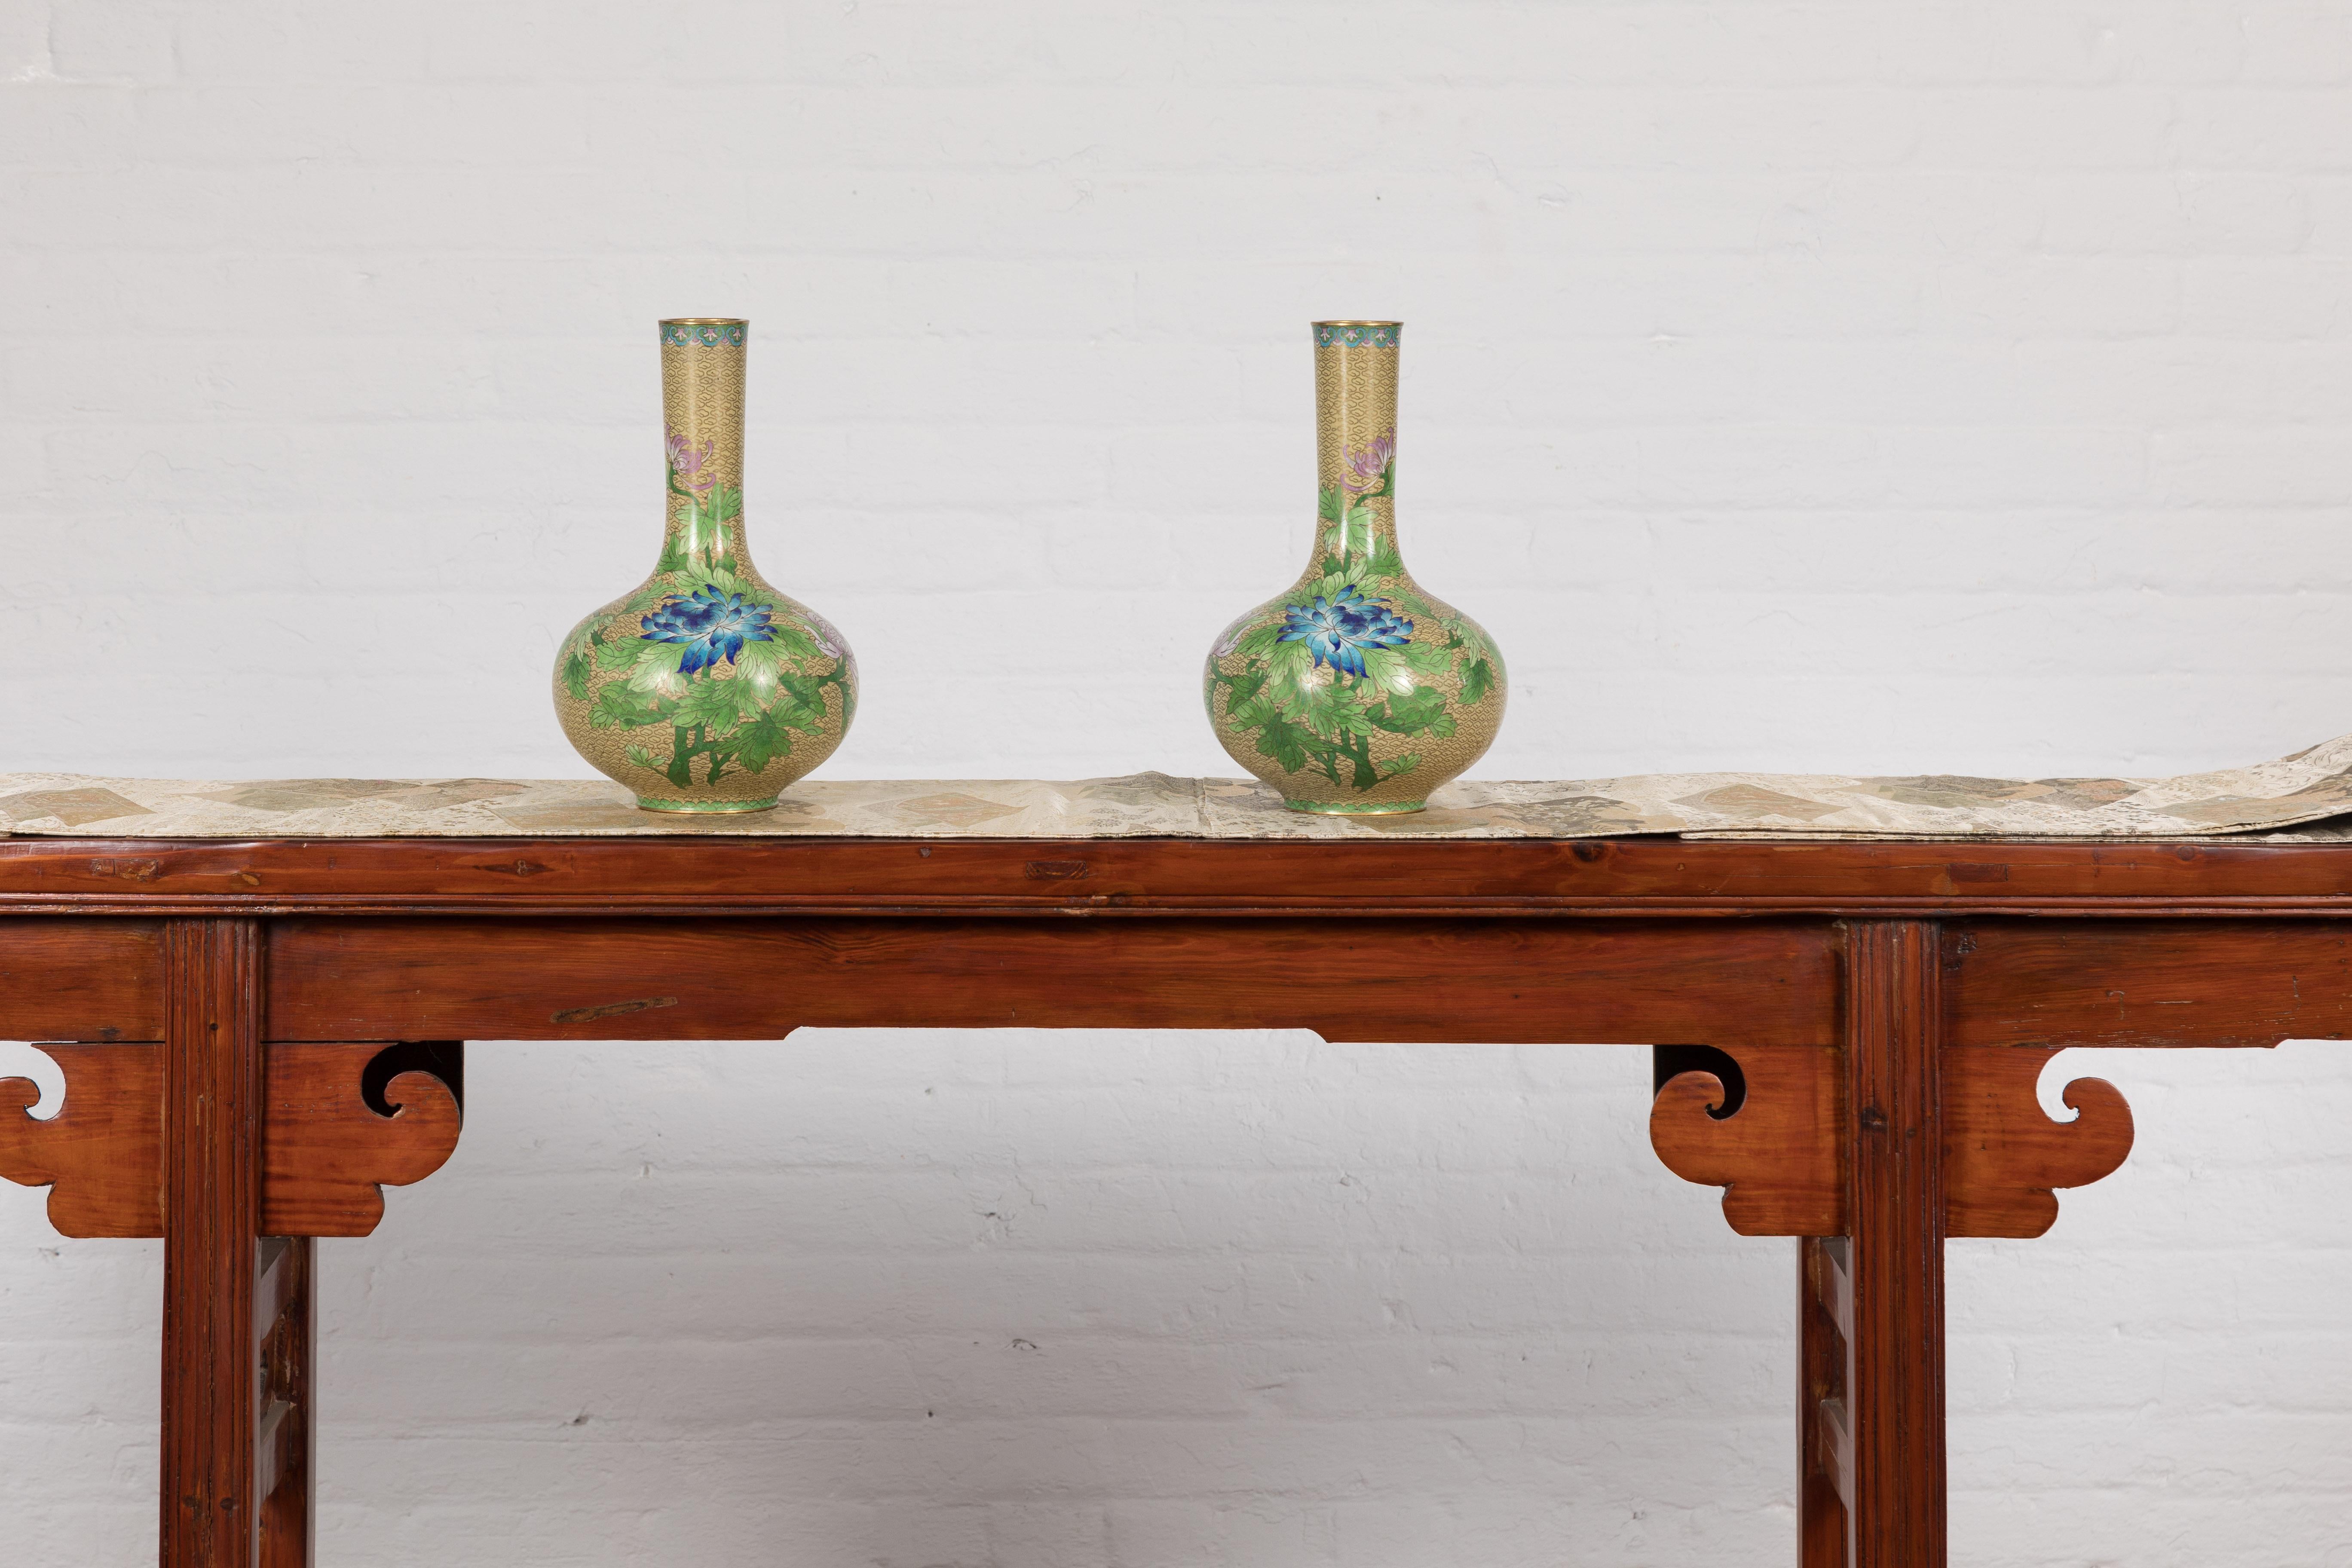 Paire de vases chinois du milieu du 20e siècle à décor floral cloisonné. Bienvenue dans une symphonie de couleurs et de savoir-faire, présentée par cette paire de vases chinois d'époque, datant du milieu du XXe siècle. Un trésor pour les